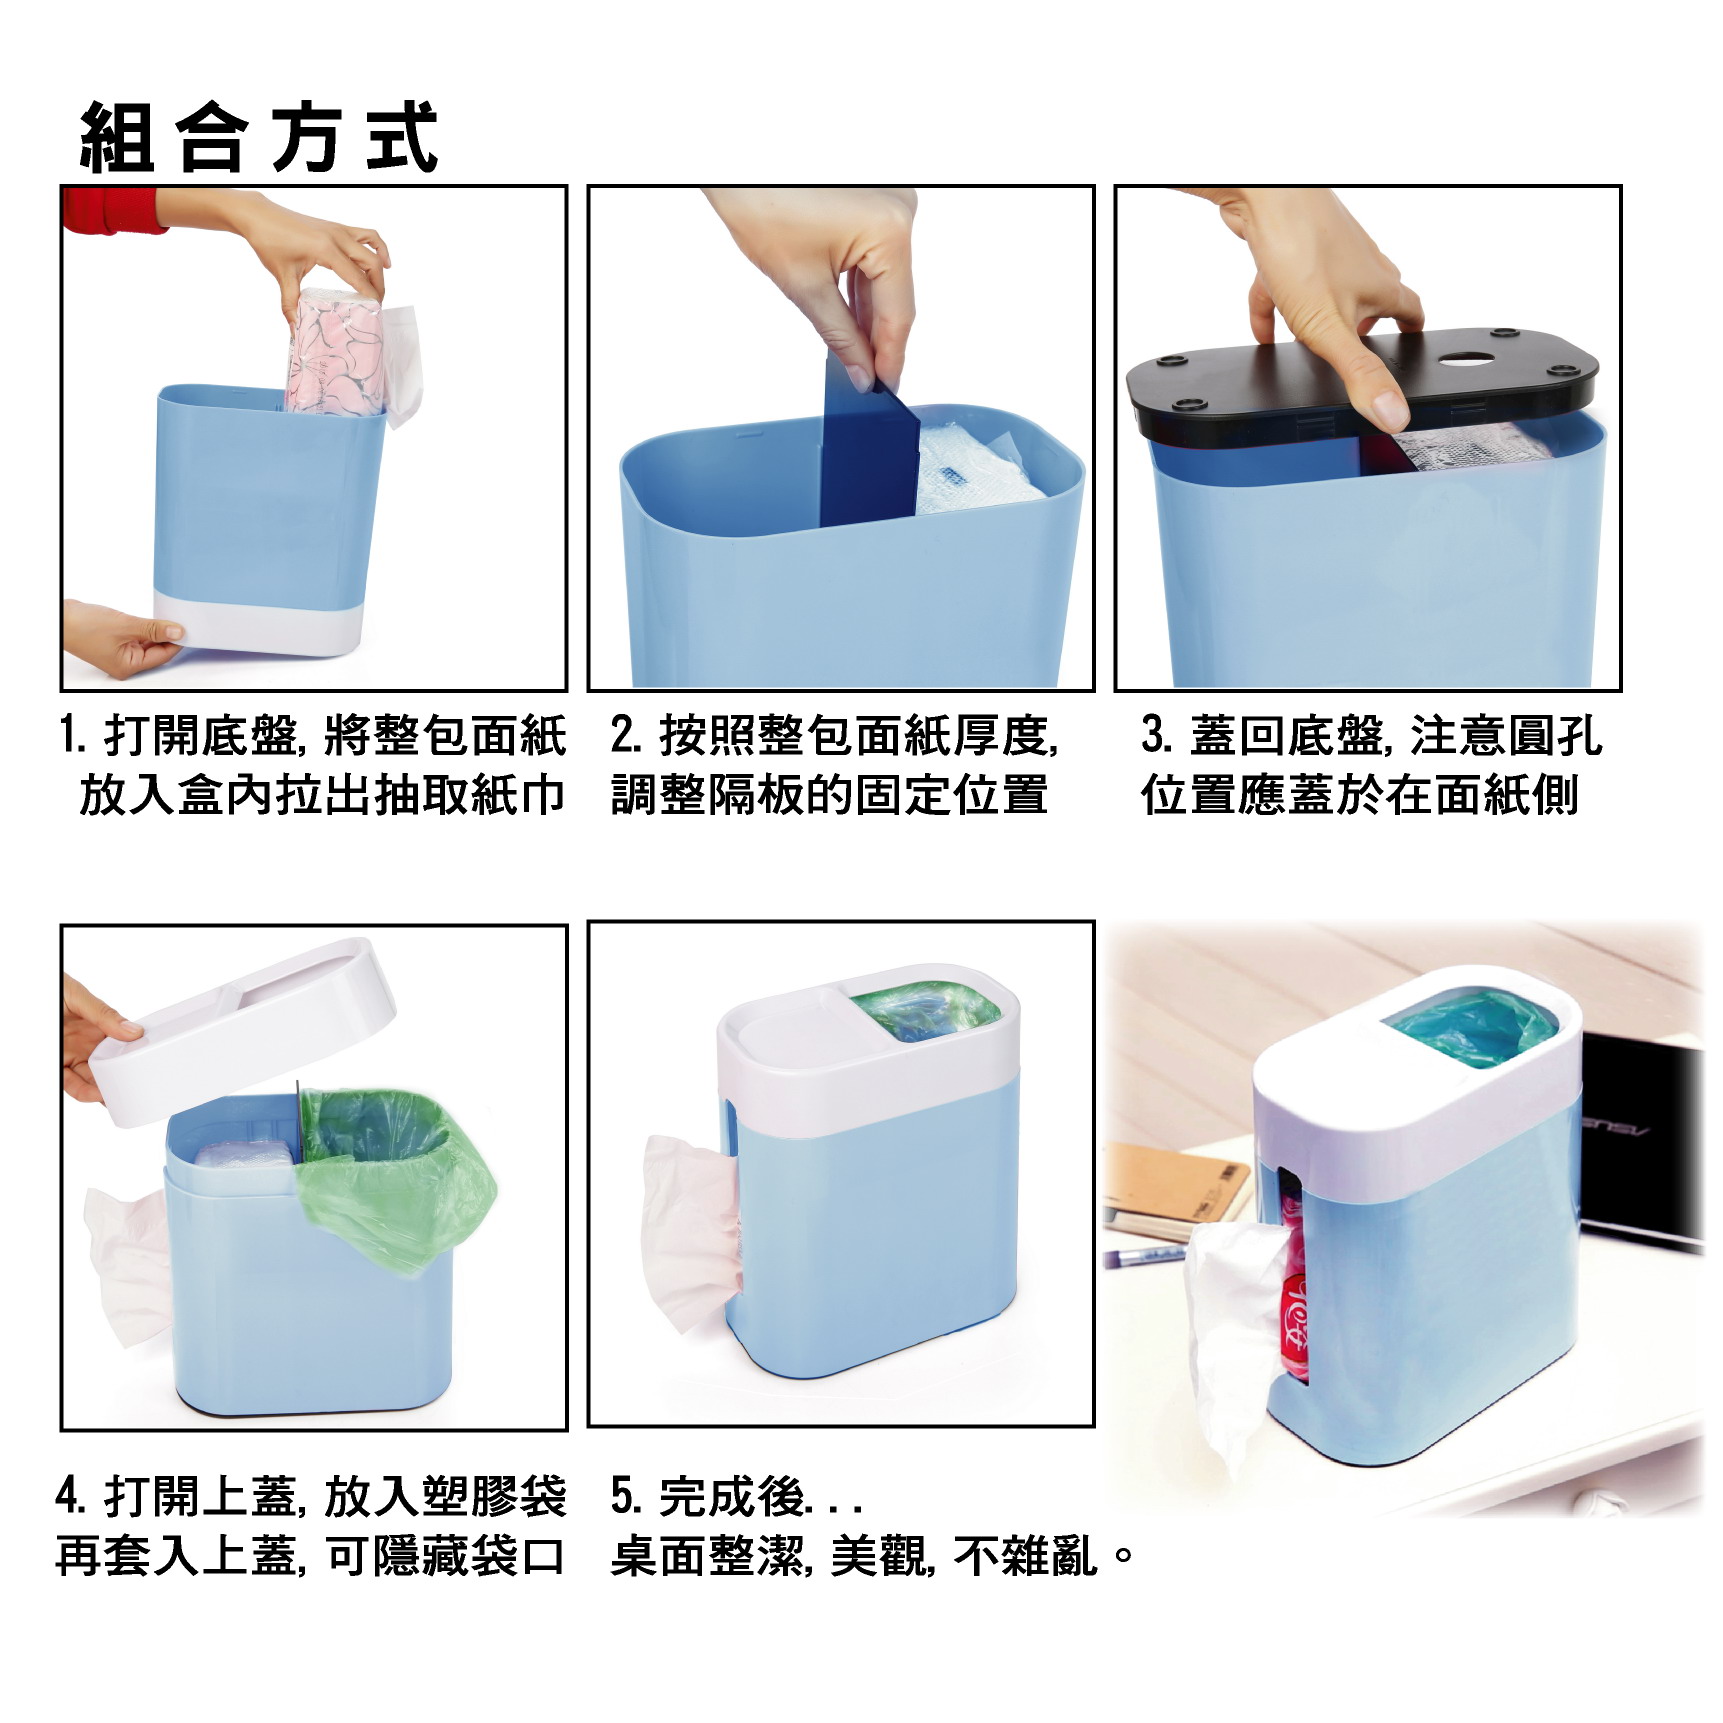 紙巾垃圾桶雙用盒(藍色)